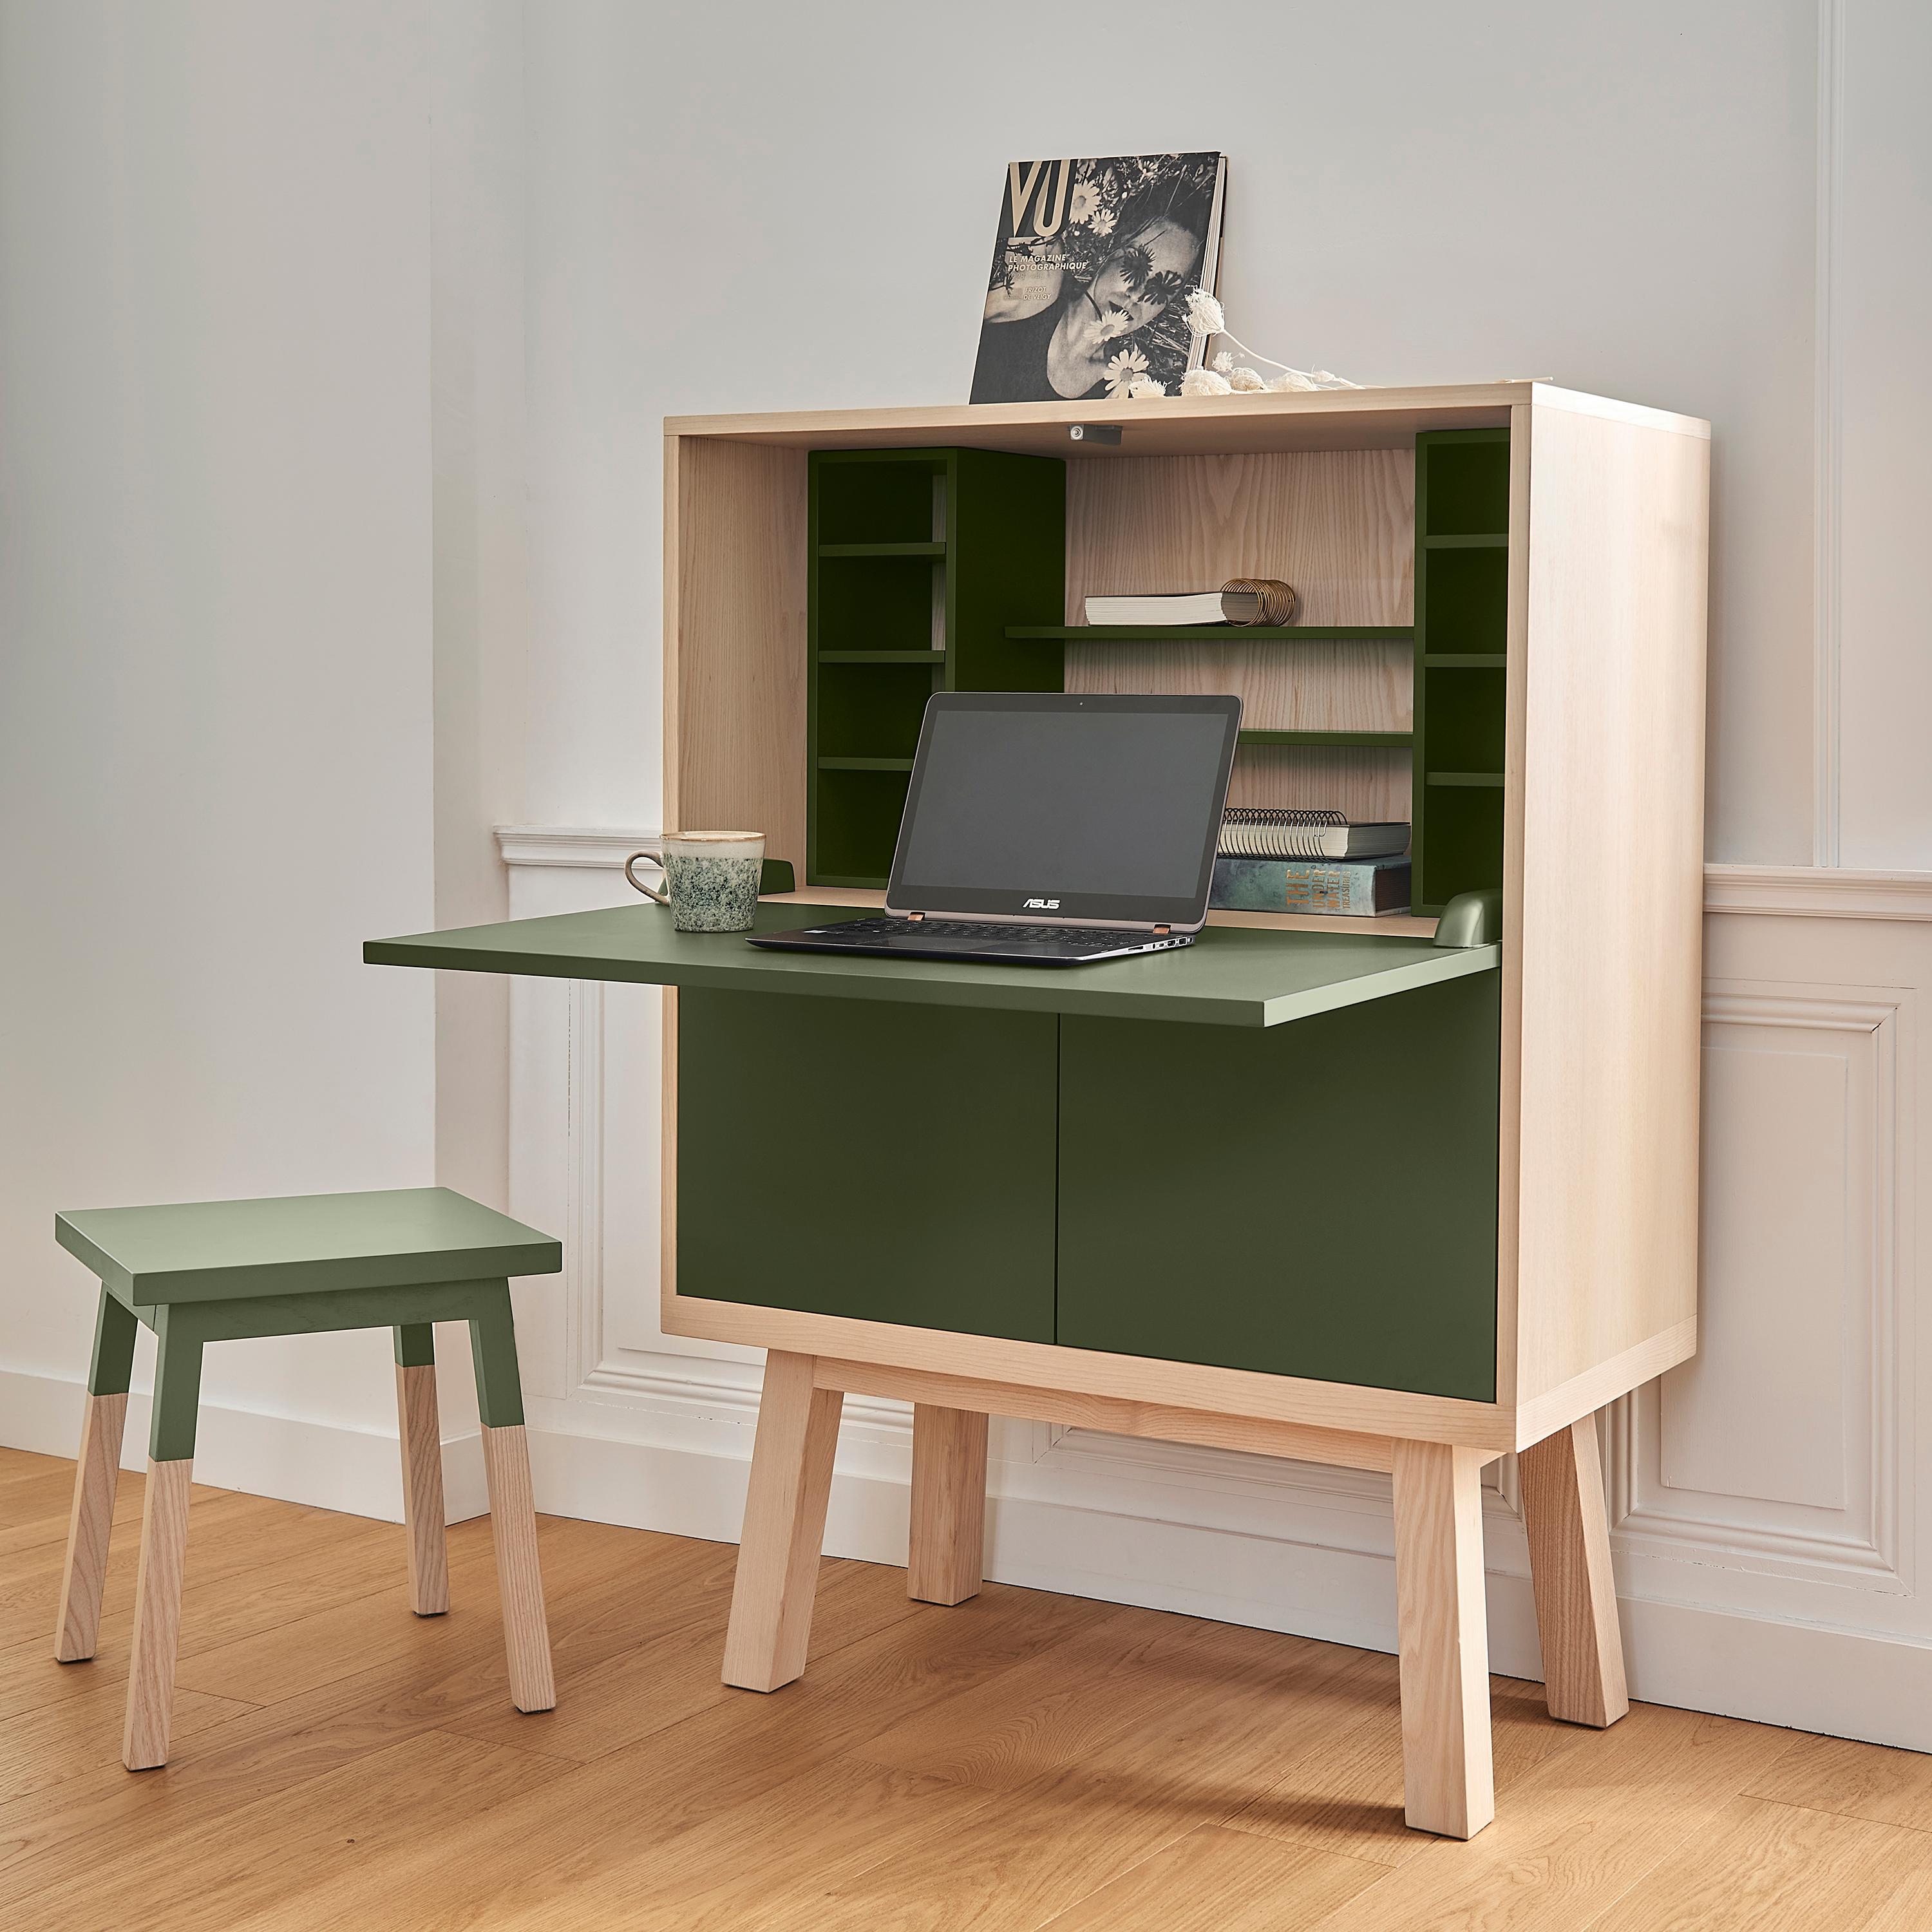 Dieser Secretaire-Schreibtisch wurde von dem berühmten Pariser Designer Eric Gizard entworfen und wird komplett montiert geliefert. 

Die Abmessungen der Box selbst sind Breite 90 cm / 35.4'' x Höhe 90 cm / 35.4'' x Tiefe 46 cm / 18;11''
Die Höhe